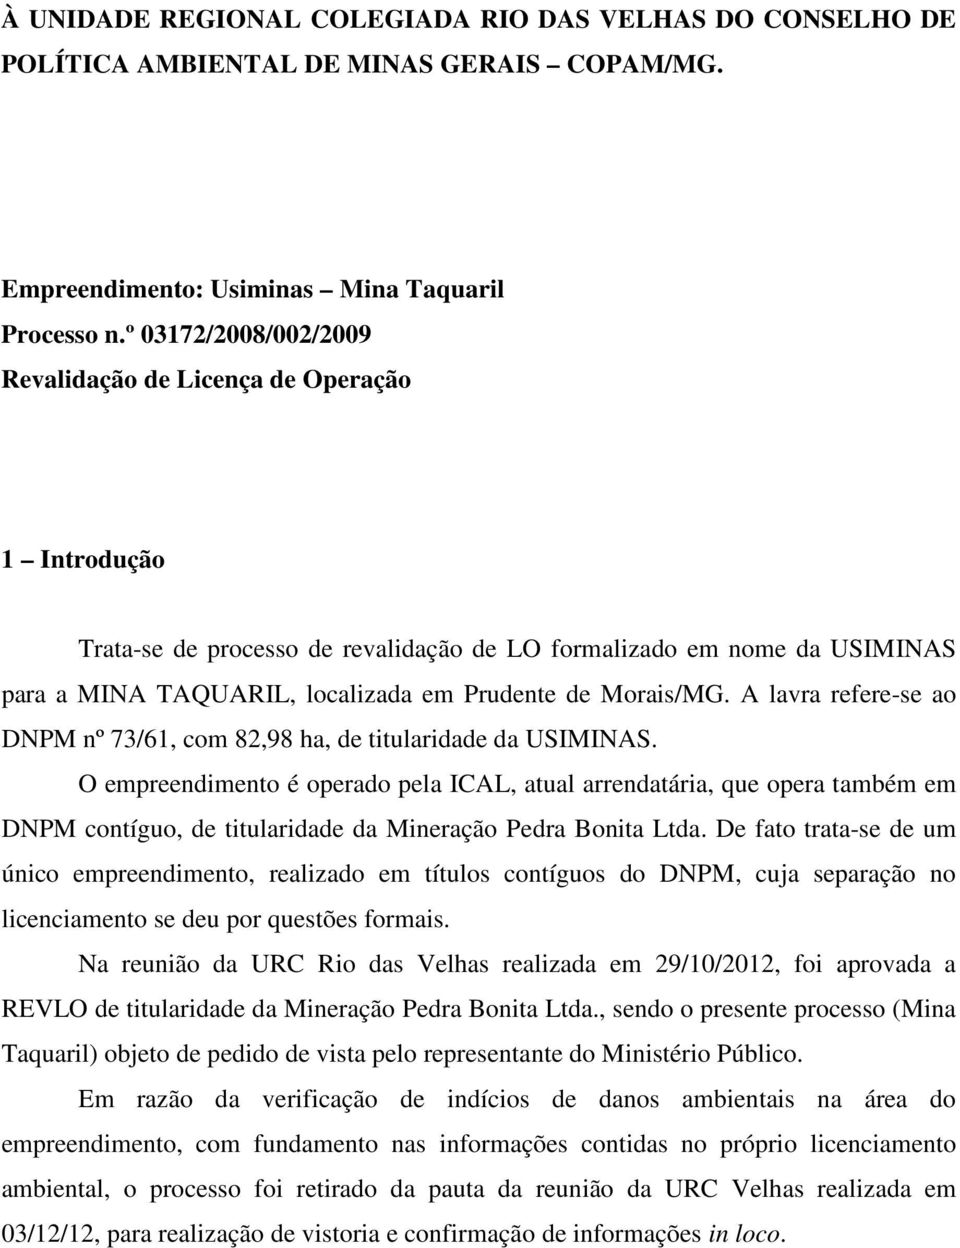 Morais/MG. A lavra refere-se ao DNPM nº 73/61, com 82,98 ha, de titularidade da USIMINAS.